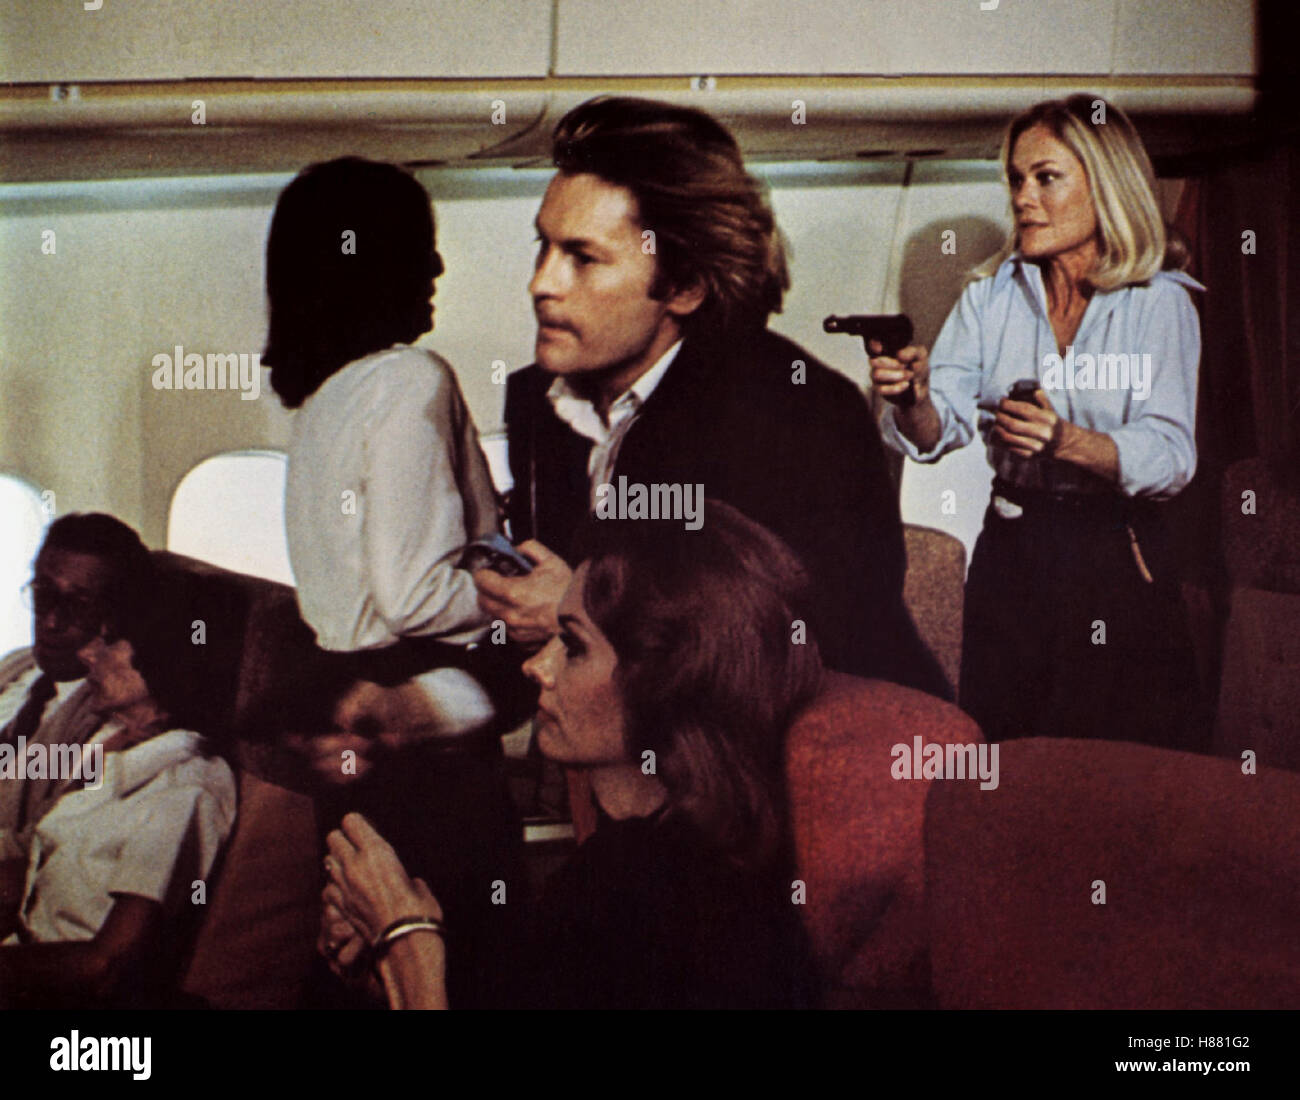 Unternehmen Entebbe, (VICTORY AT ENTEBBE) USA 1976, Regie: Marvin Chomsky, HELMUT BERGER, Stichwort: Schusswaffe, Revolver, Flugzeugentführung, Terrorsnschlag Stock Photo